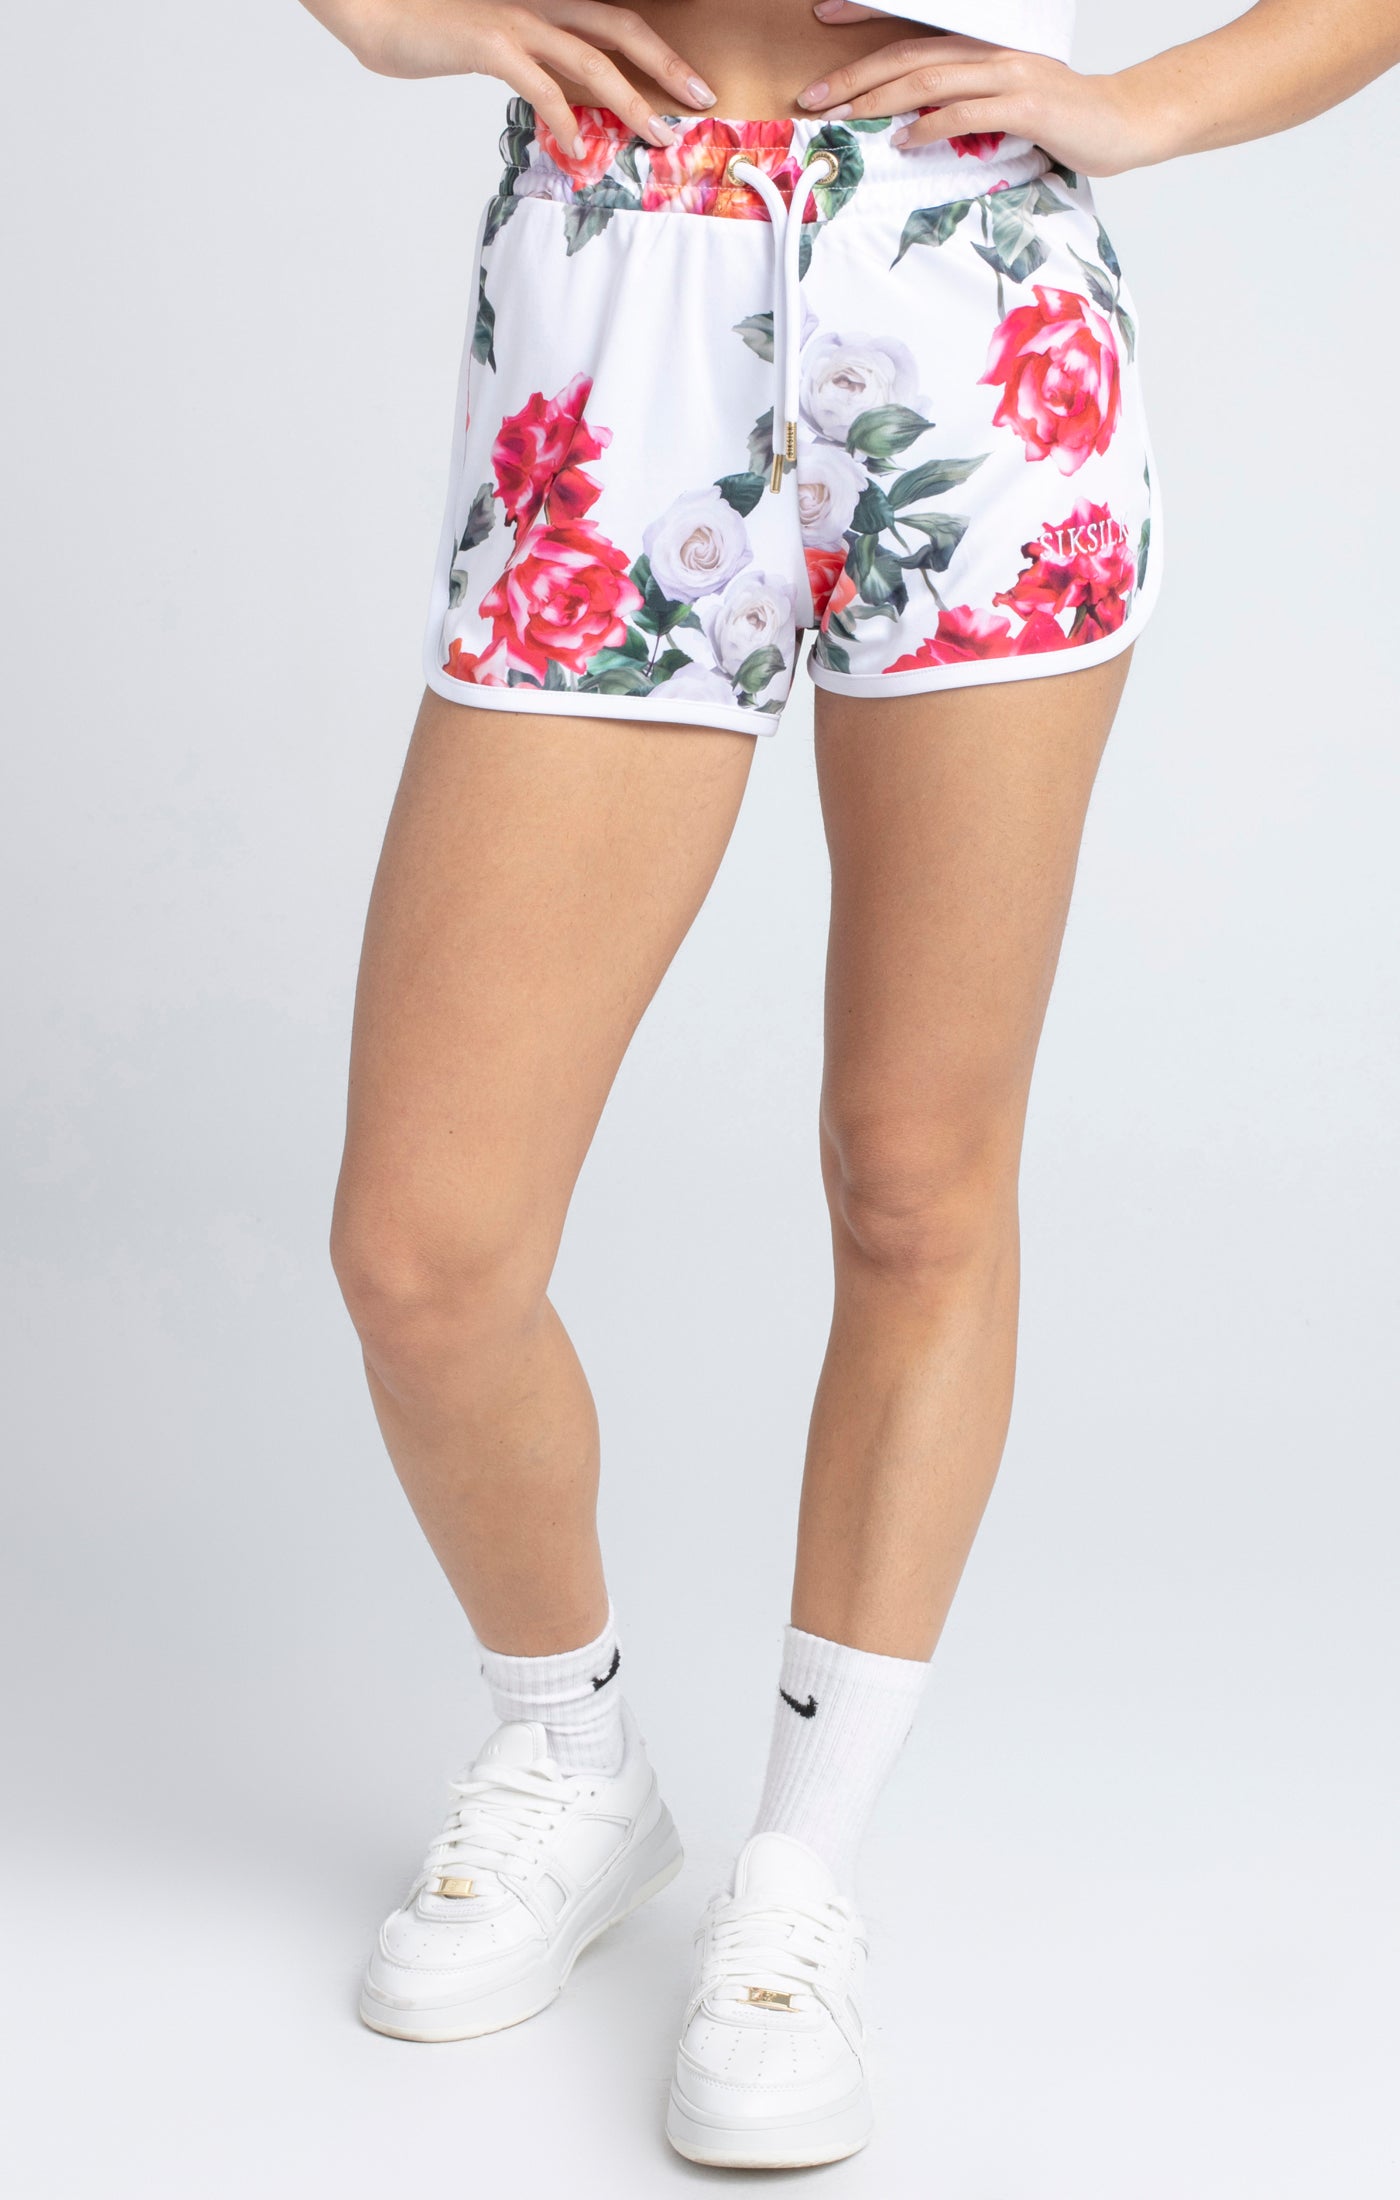 Ecrufarbene Shorts mit Blumenmotiv